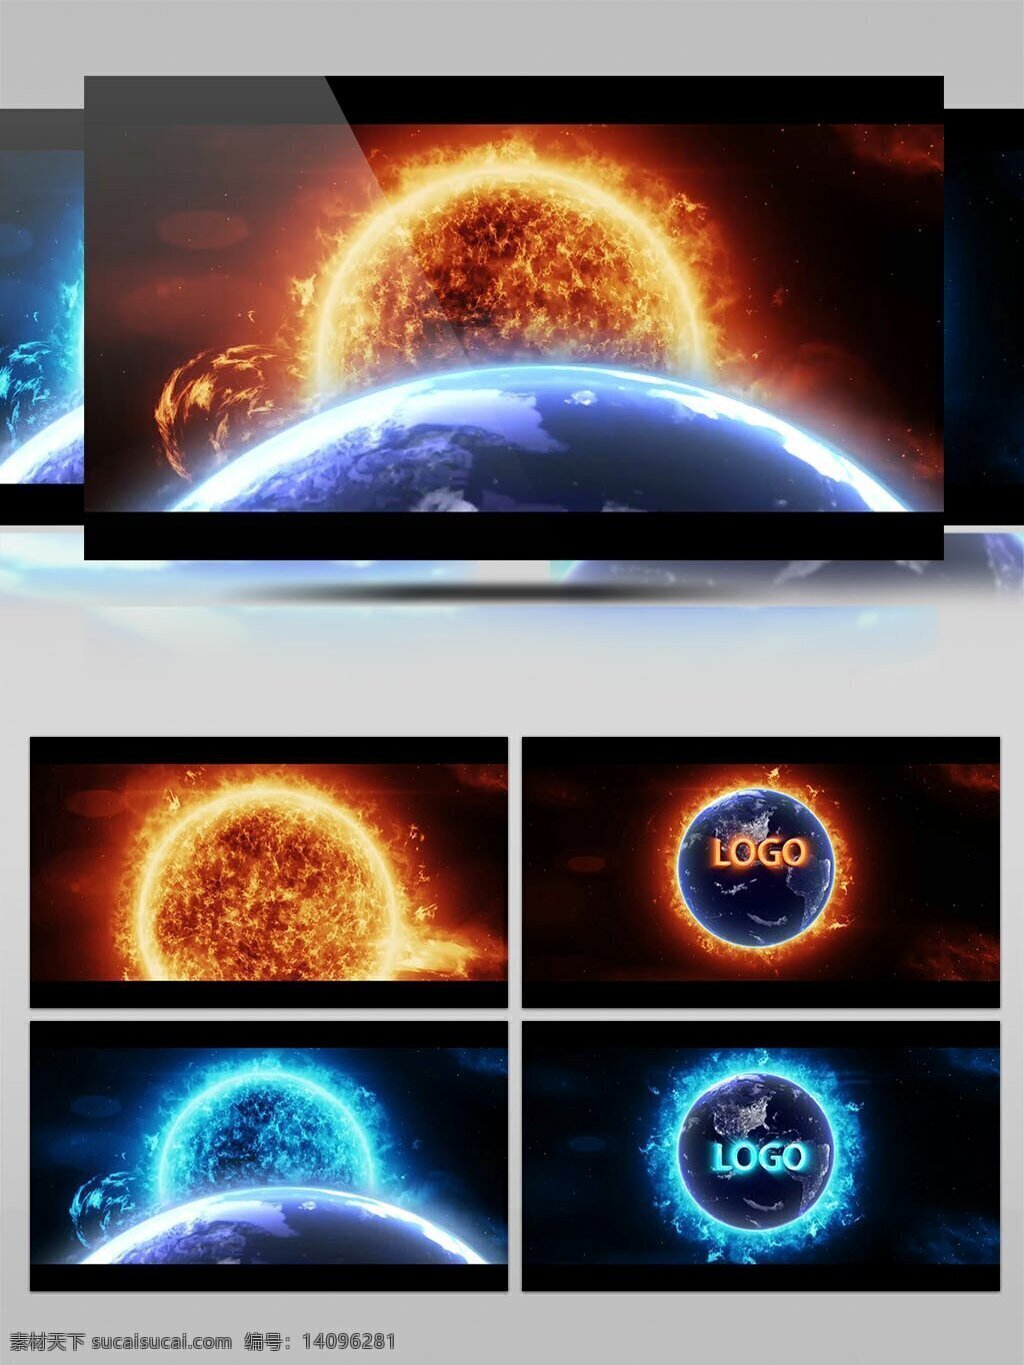 红蓝 两 款 震撼 日食 效果 logo 演绎 两款 红蓝两款 震撼日食 logo演绎 两款震撼 日食效果